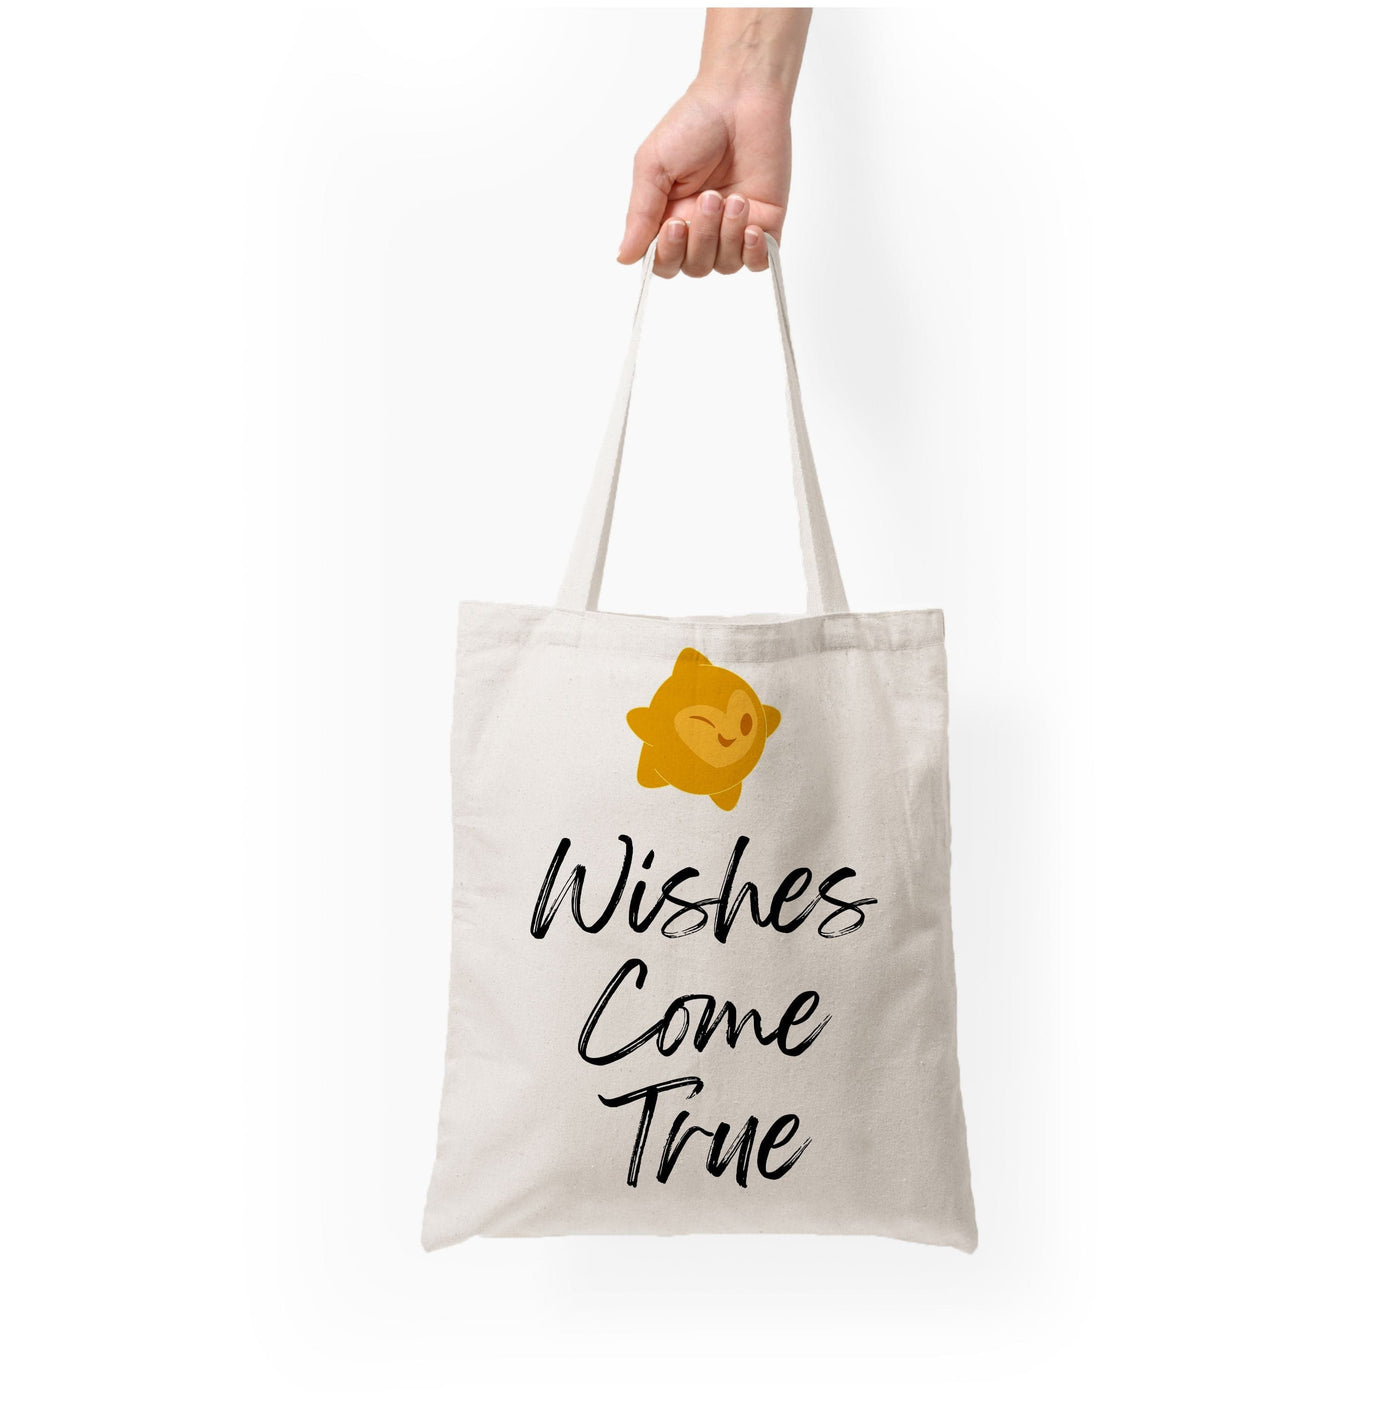 Wishes Come True - Wish Tote Bag